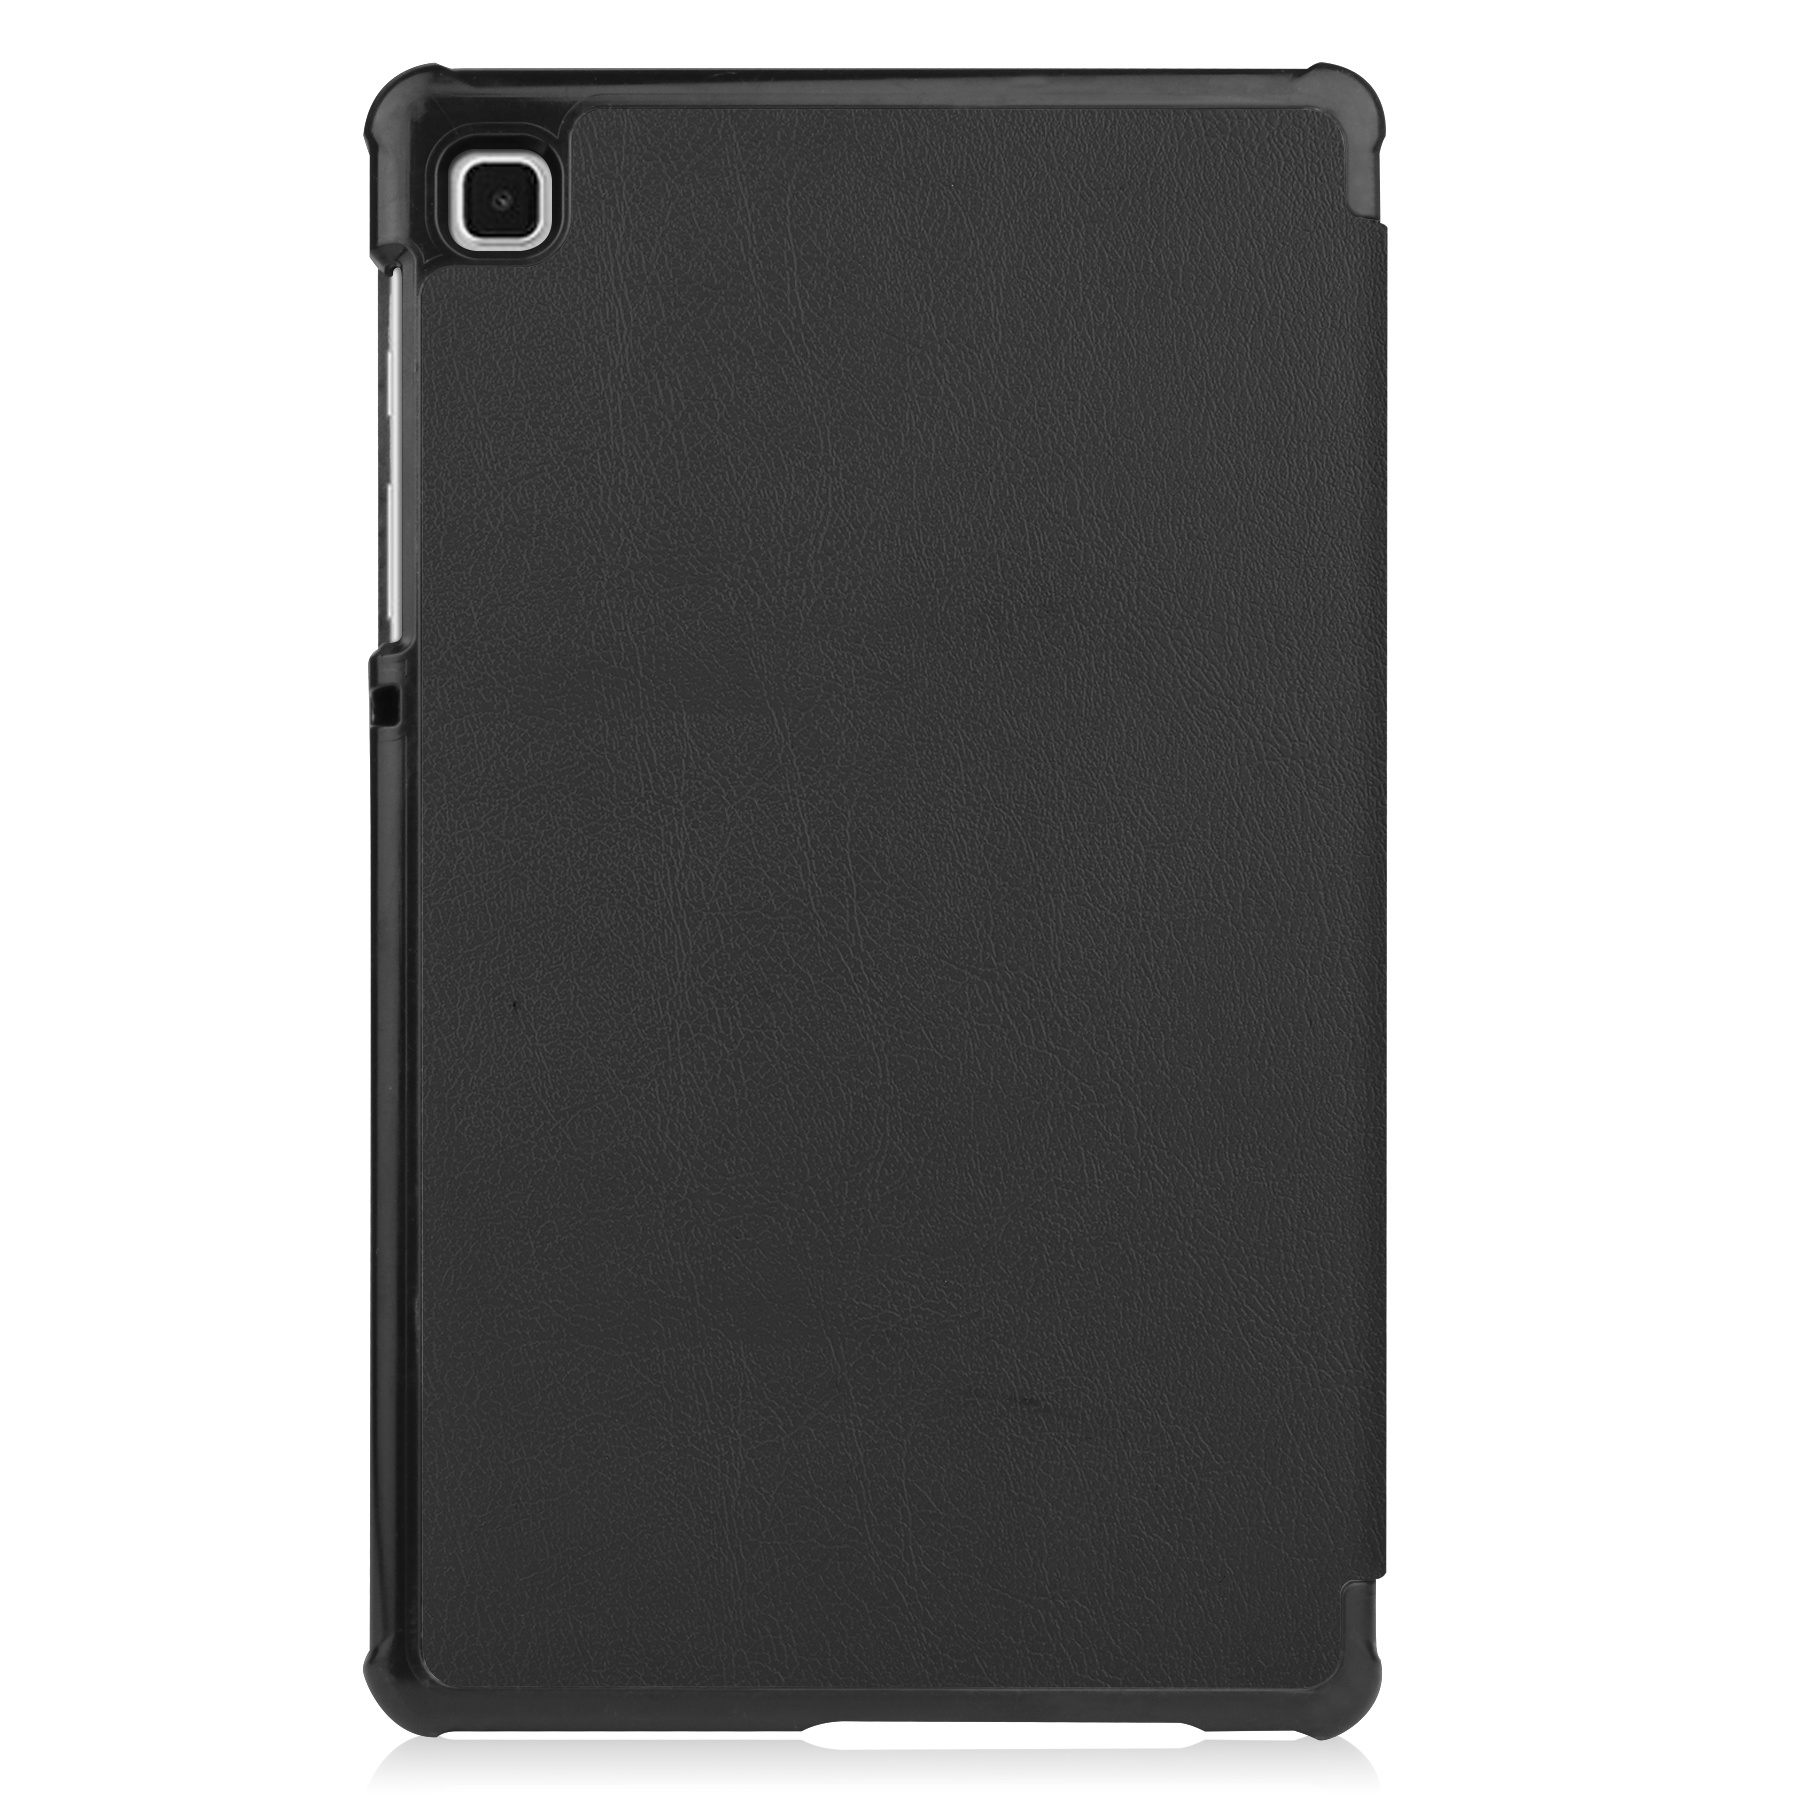 Samsung Tab S6 Lite Hoes Book Case Hoesje Met Screenprotector - Samsung Galaxy Tab S6 Lite Hoesje Hard Cover - Samsung Tab S6 Lite Hoes Zwart